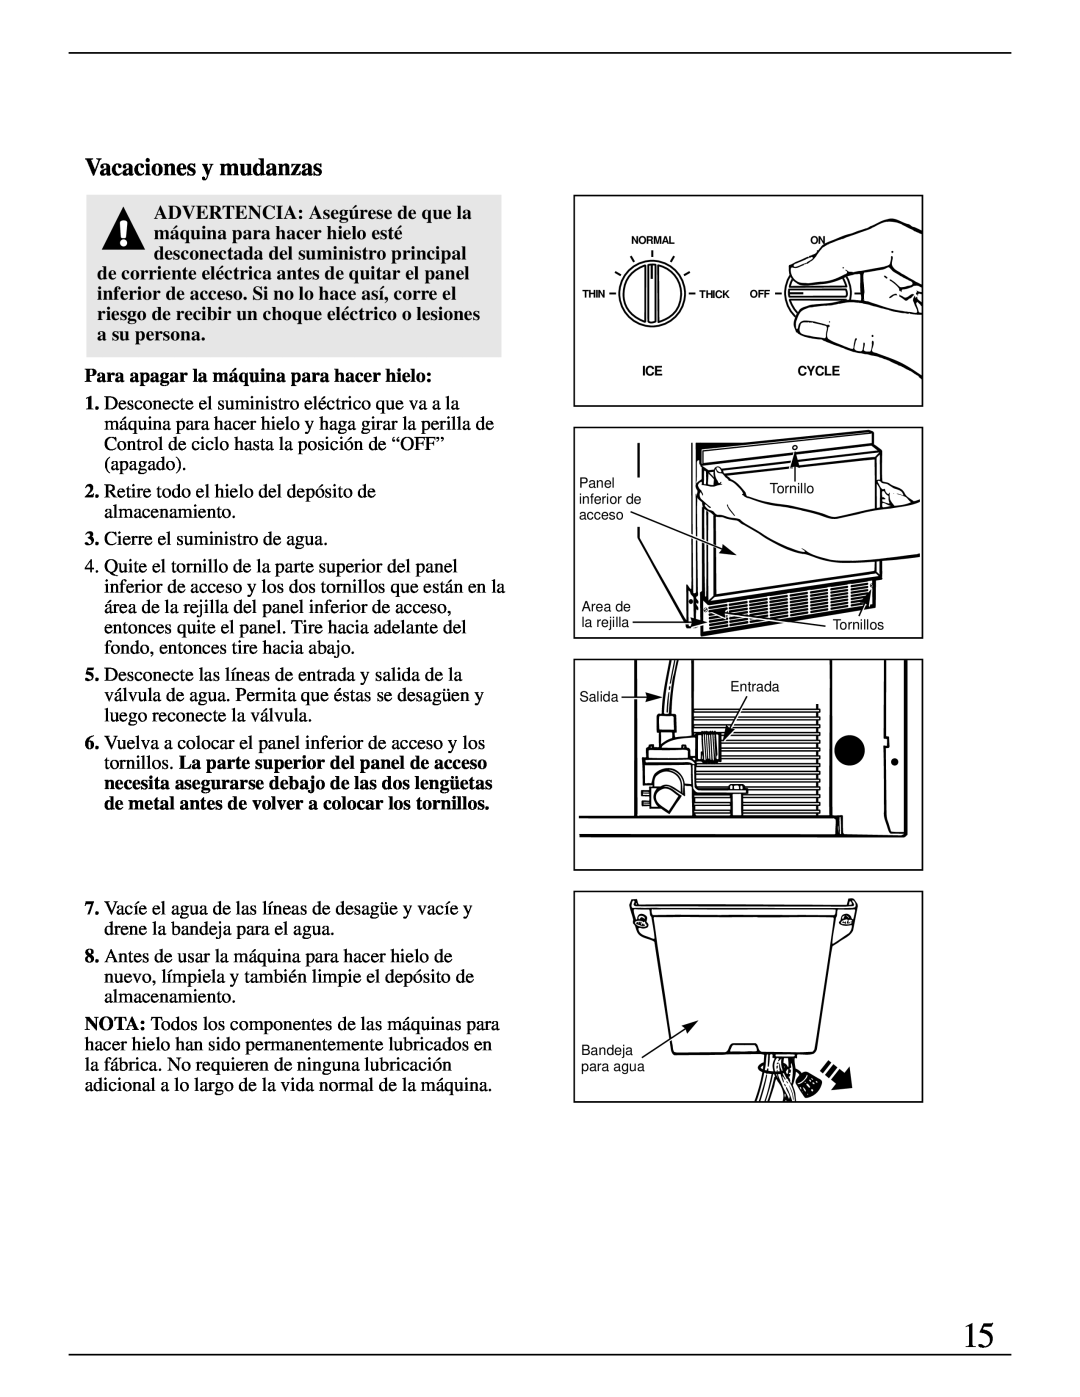 GE Monogram ZDIW50 installation instructions Vacaciones y mudanzas, Para apagar la máquina para hacer hielo 